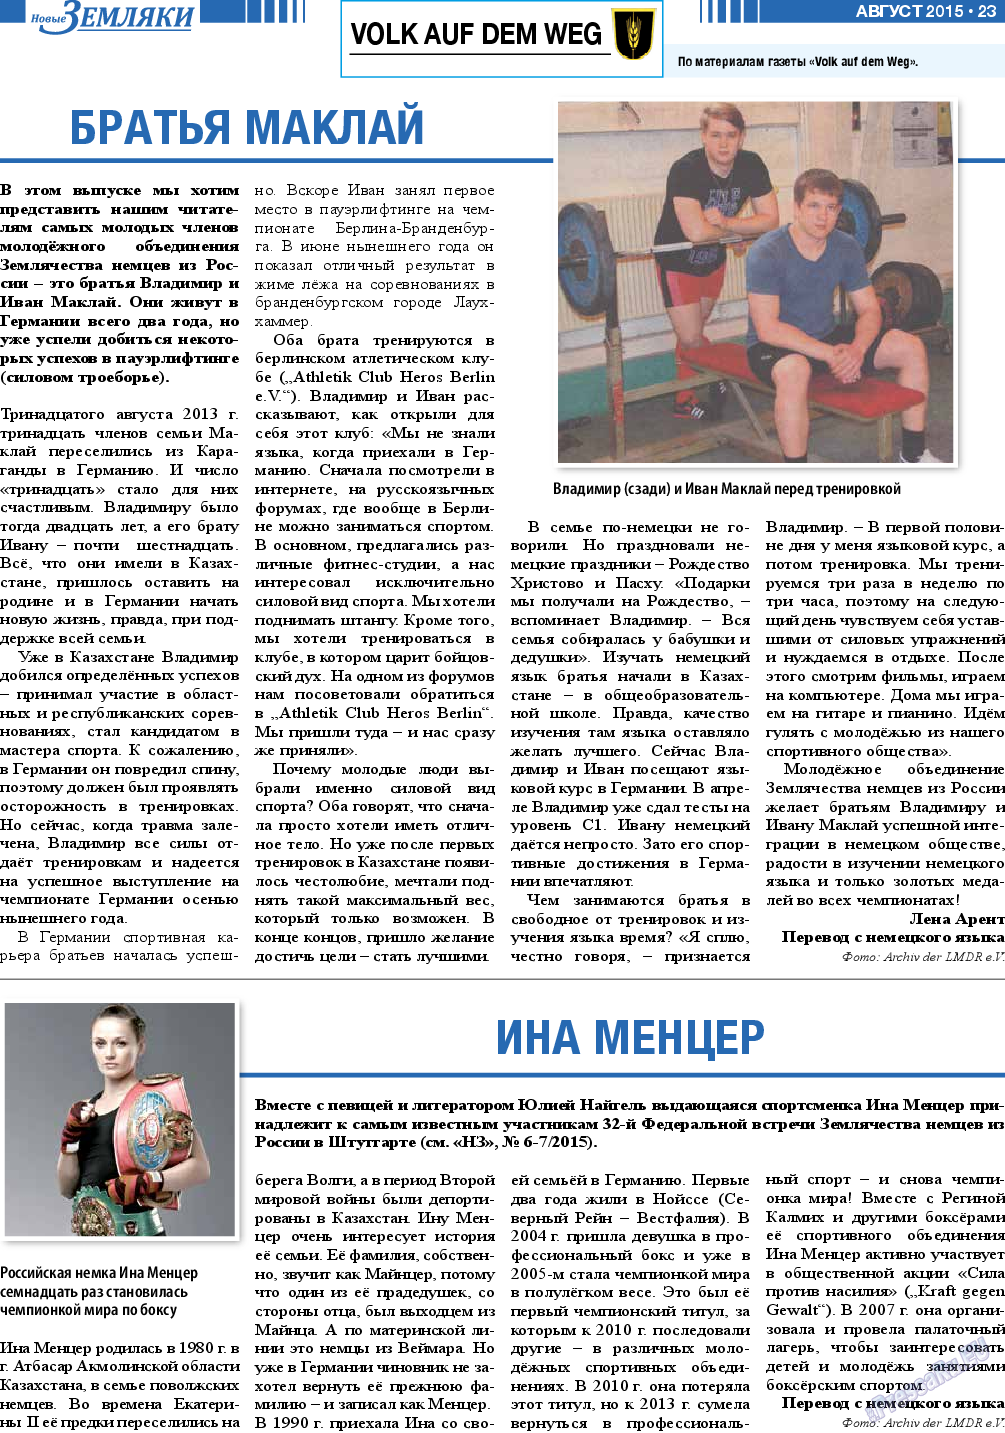 Новые Земляки, газета. 2015 №8 стр.23